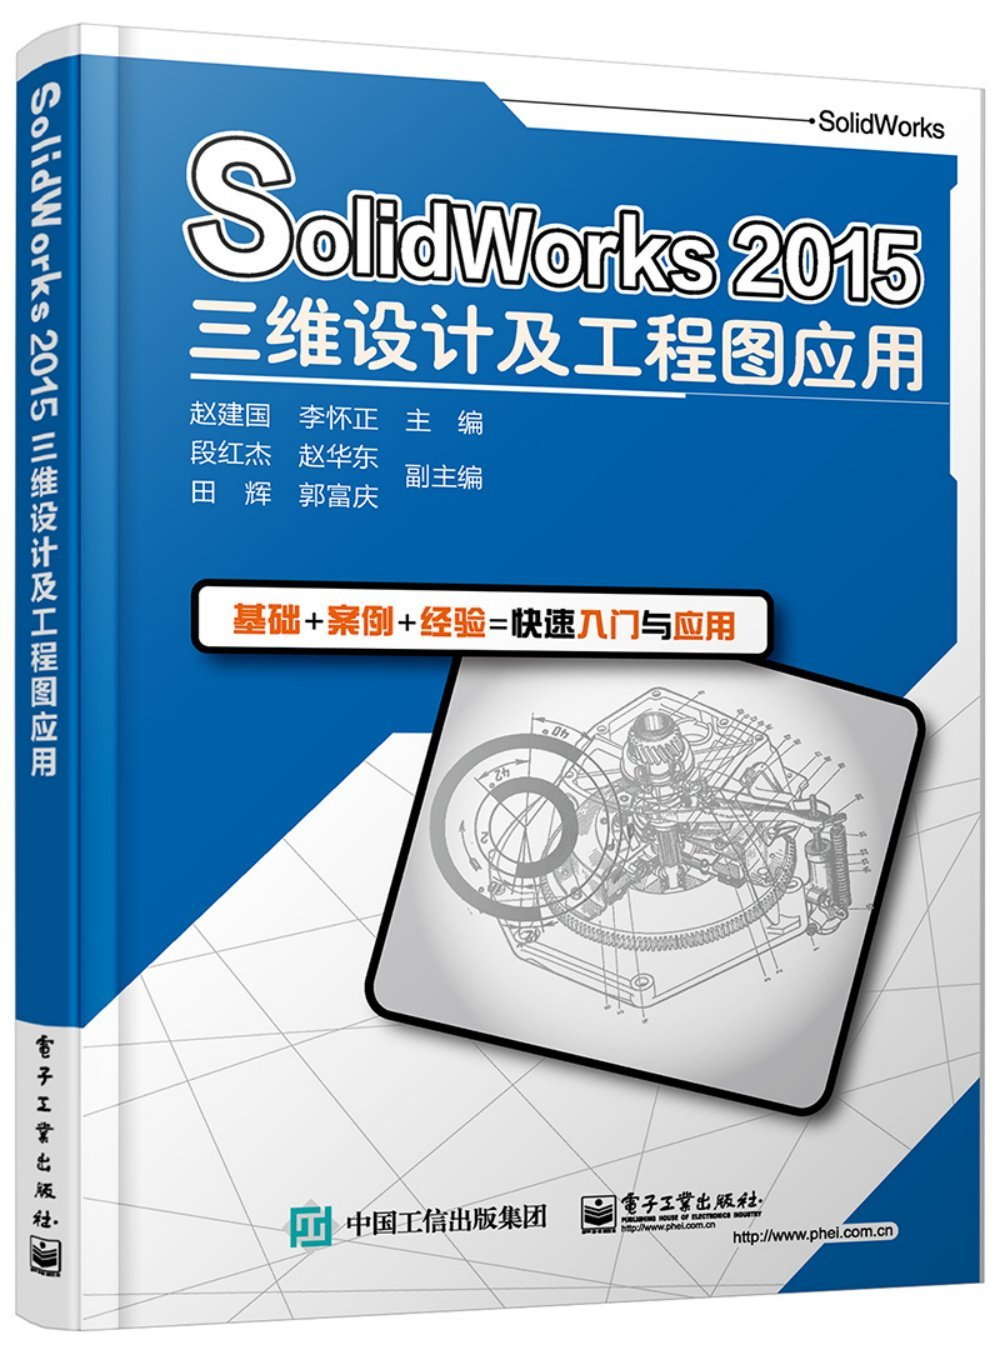 SolidWorks 2015三維設計及工程圖應用